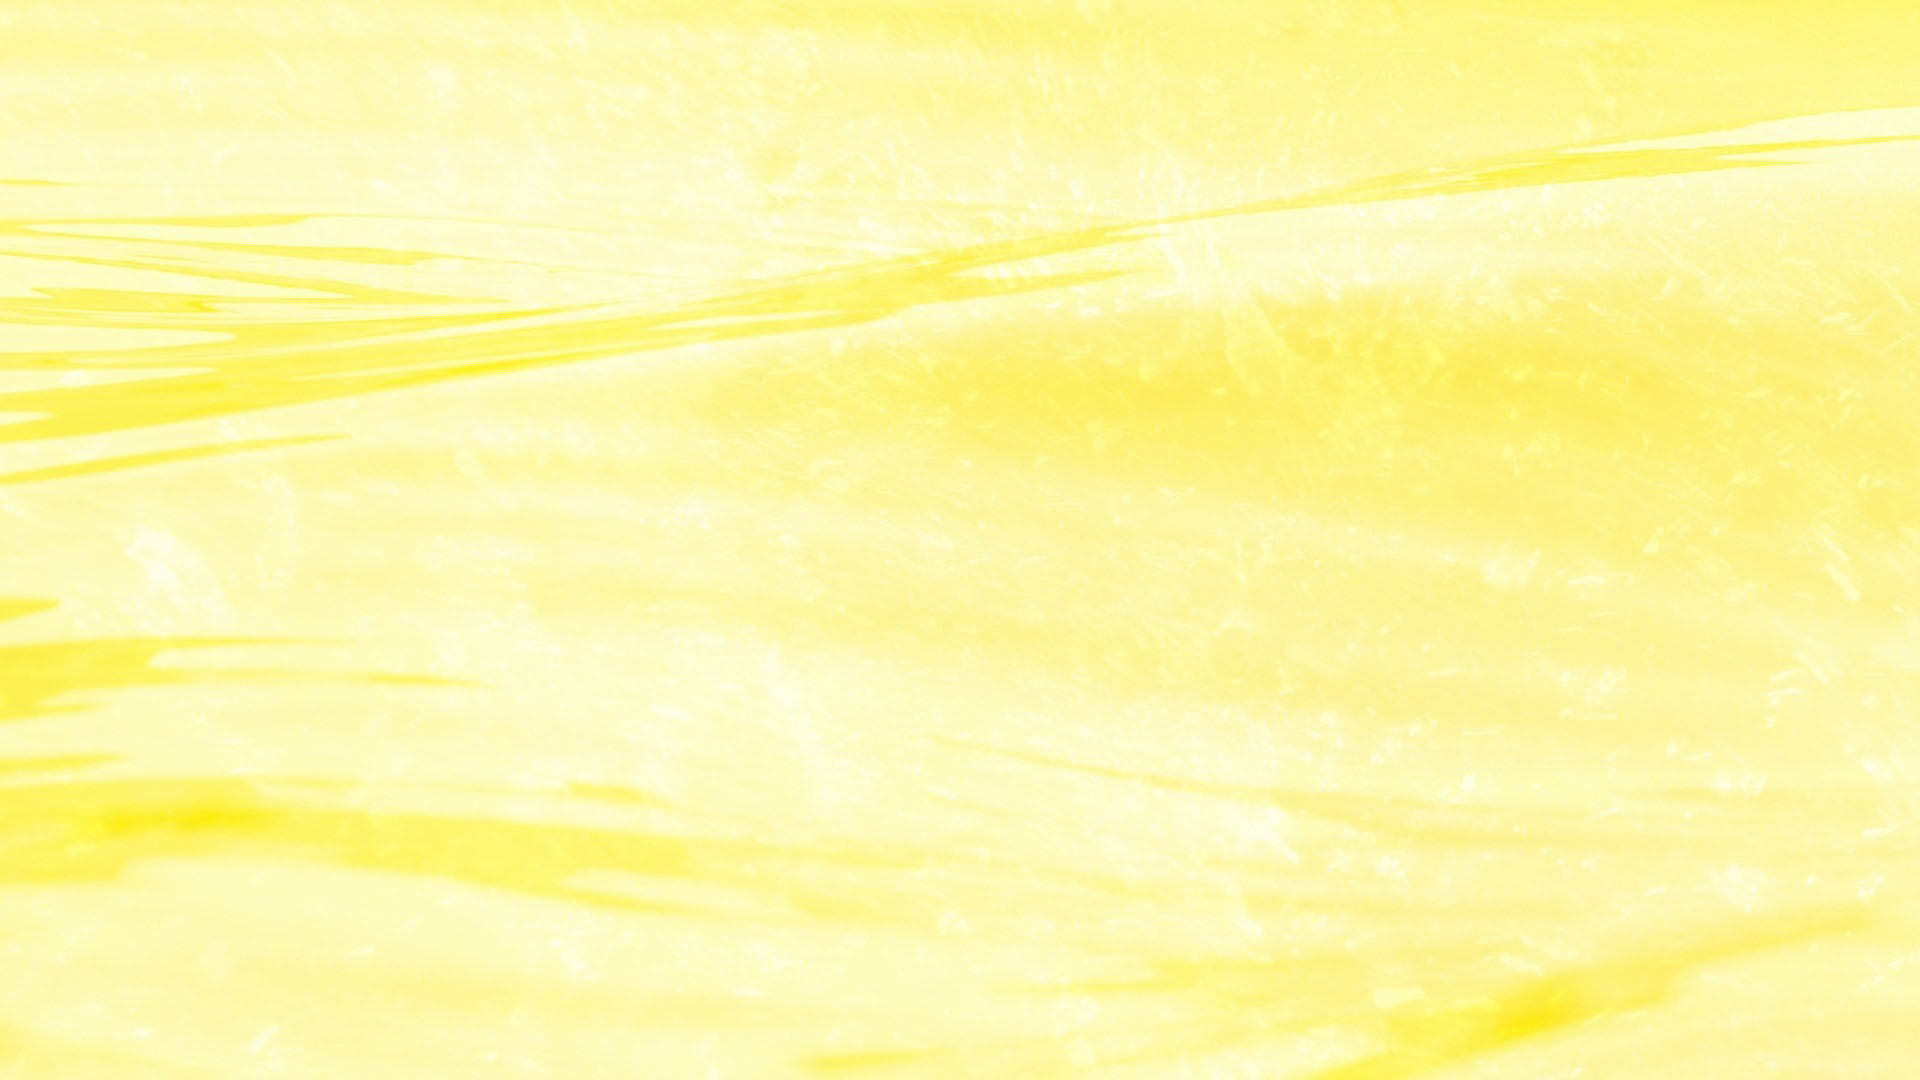 Nền màu vàng đậm - Nền màu vàng đậm với sắc tím thanh lịch là một sự kết hợp hài hòa giữa sự truyền thống và hiện đại. Hình ảnh với nền màu vàng đậm sẽ giúp cho sản phẩm của bạn trở nên đầy sức hút và lịch lãm trong mắt khách hàng.